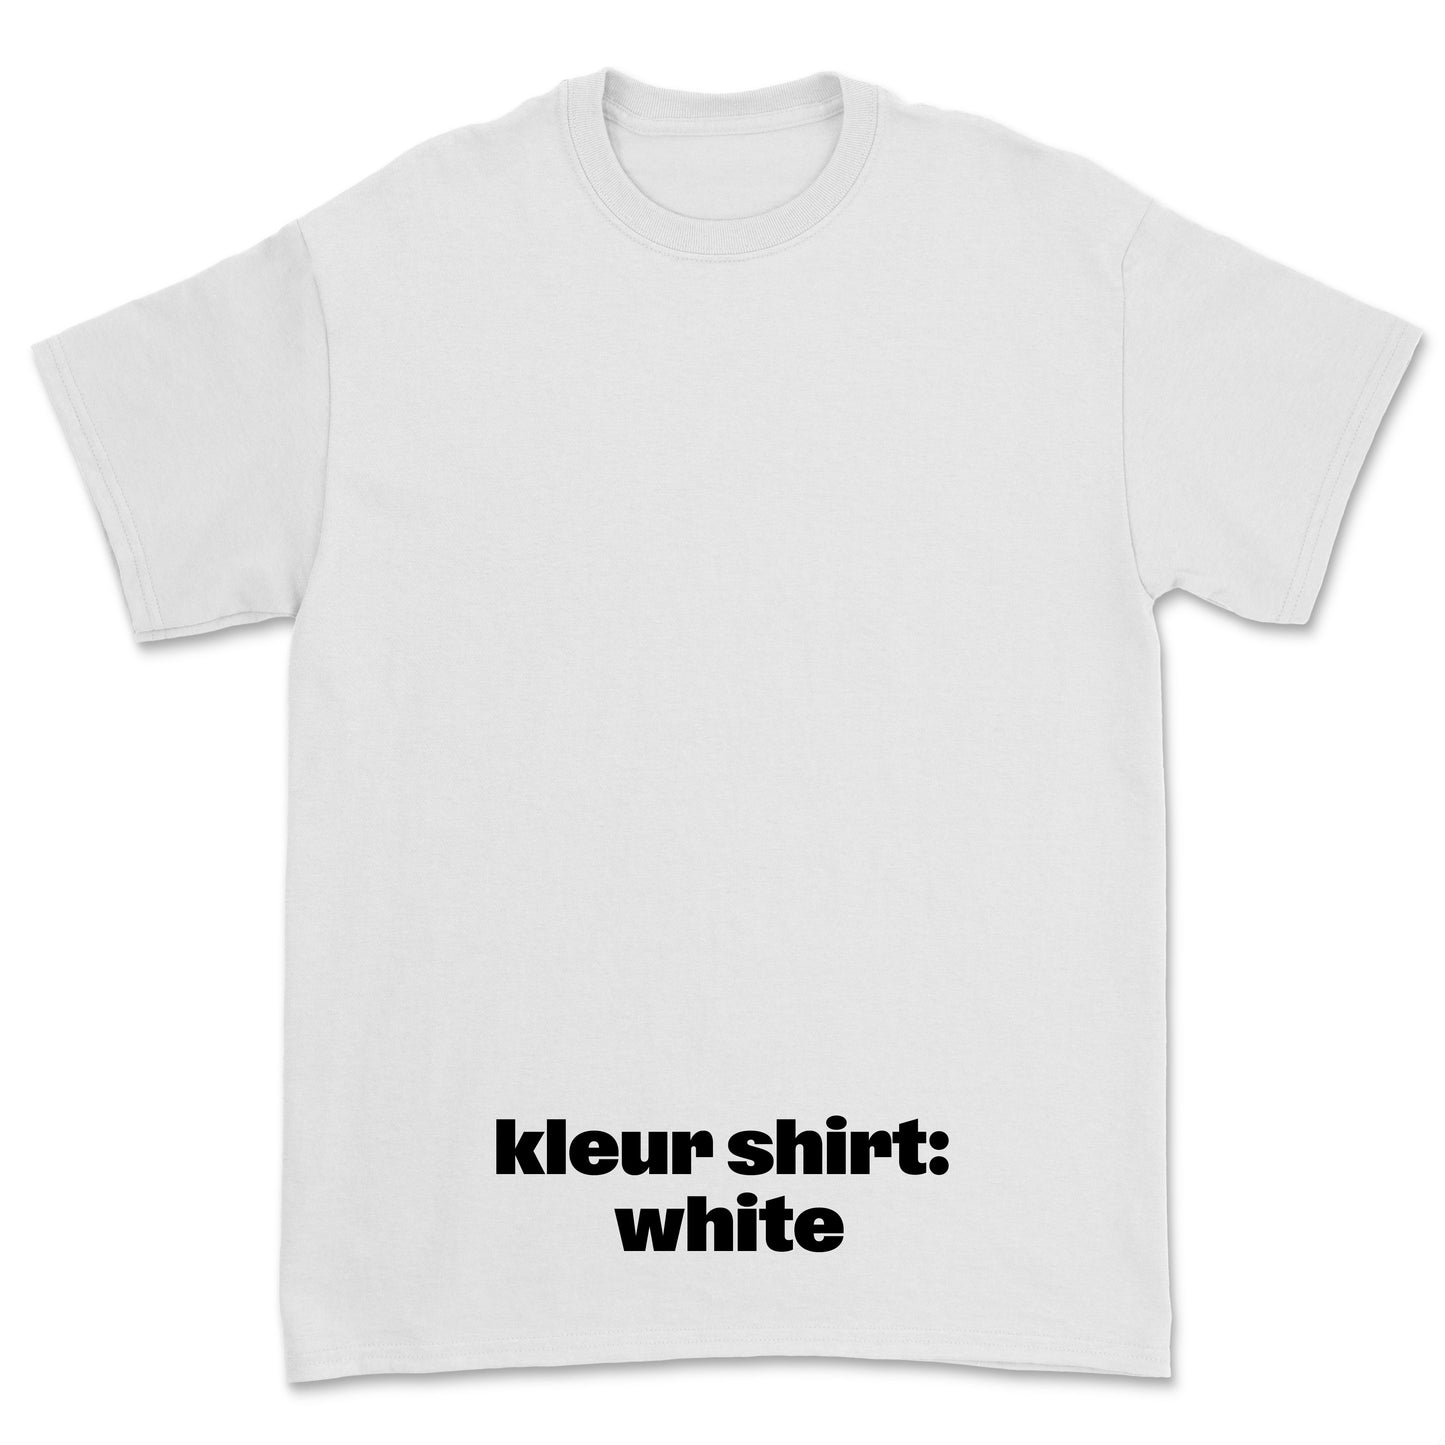 T-shirt 'Left of the Dial' • klein LOTD For Life logo borst